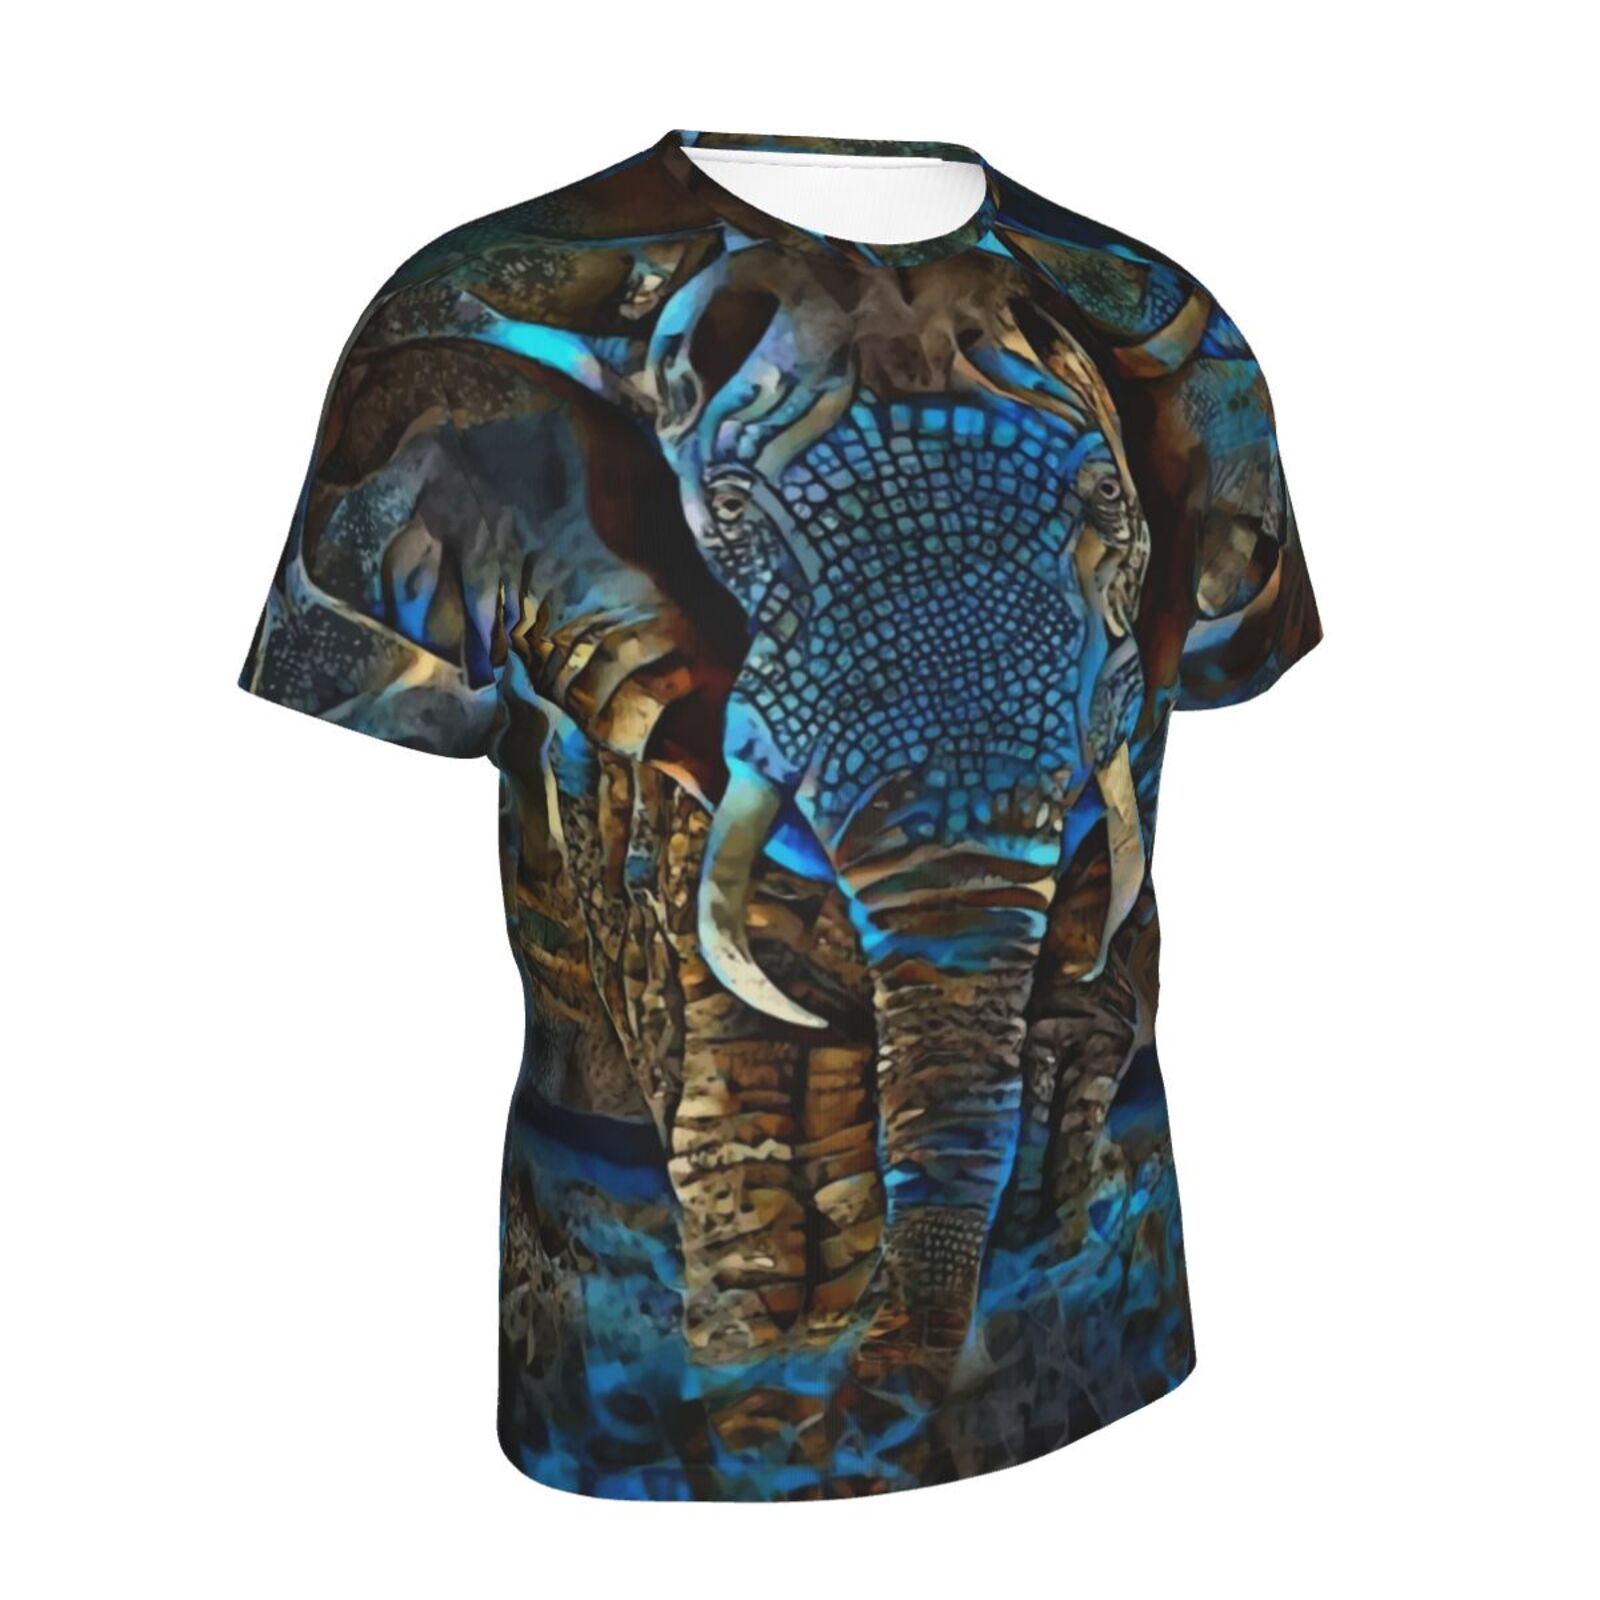 Elefant Braun Blau Medien Mischen Elemente Klassisch T Shirt